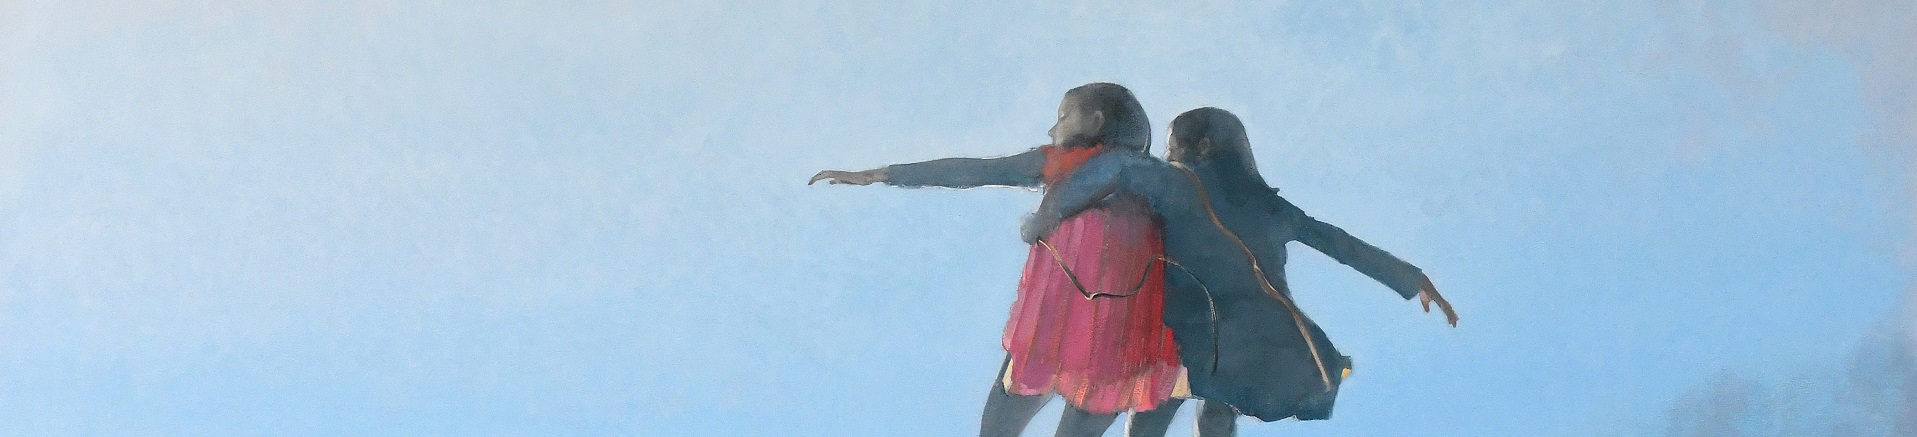 Ein Ölgemälde zeigt 2 Personen, die Arm in Arm in der Luft zu schweben scheinen